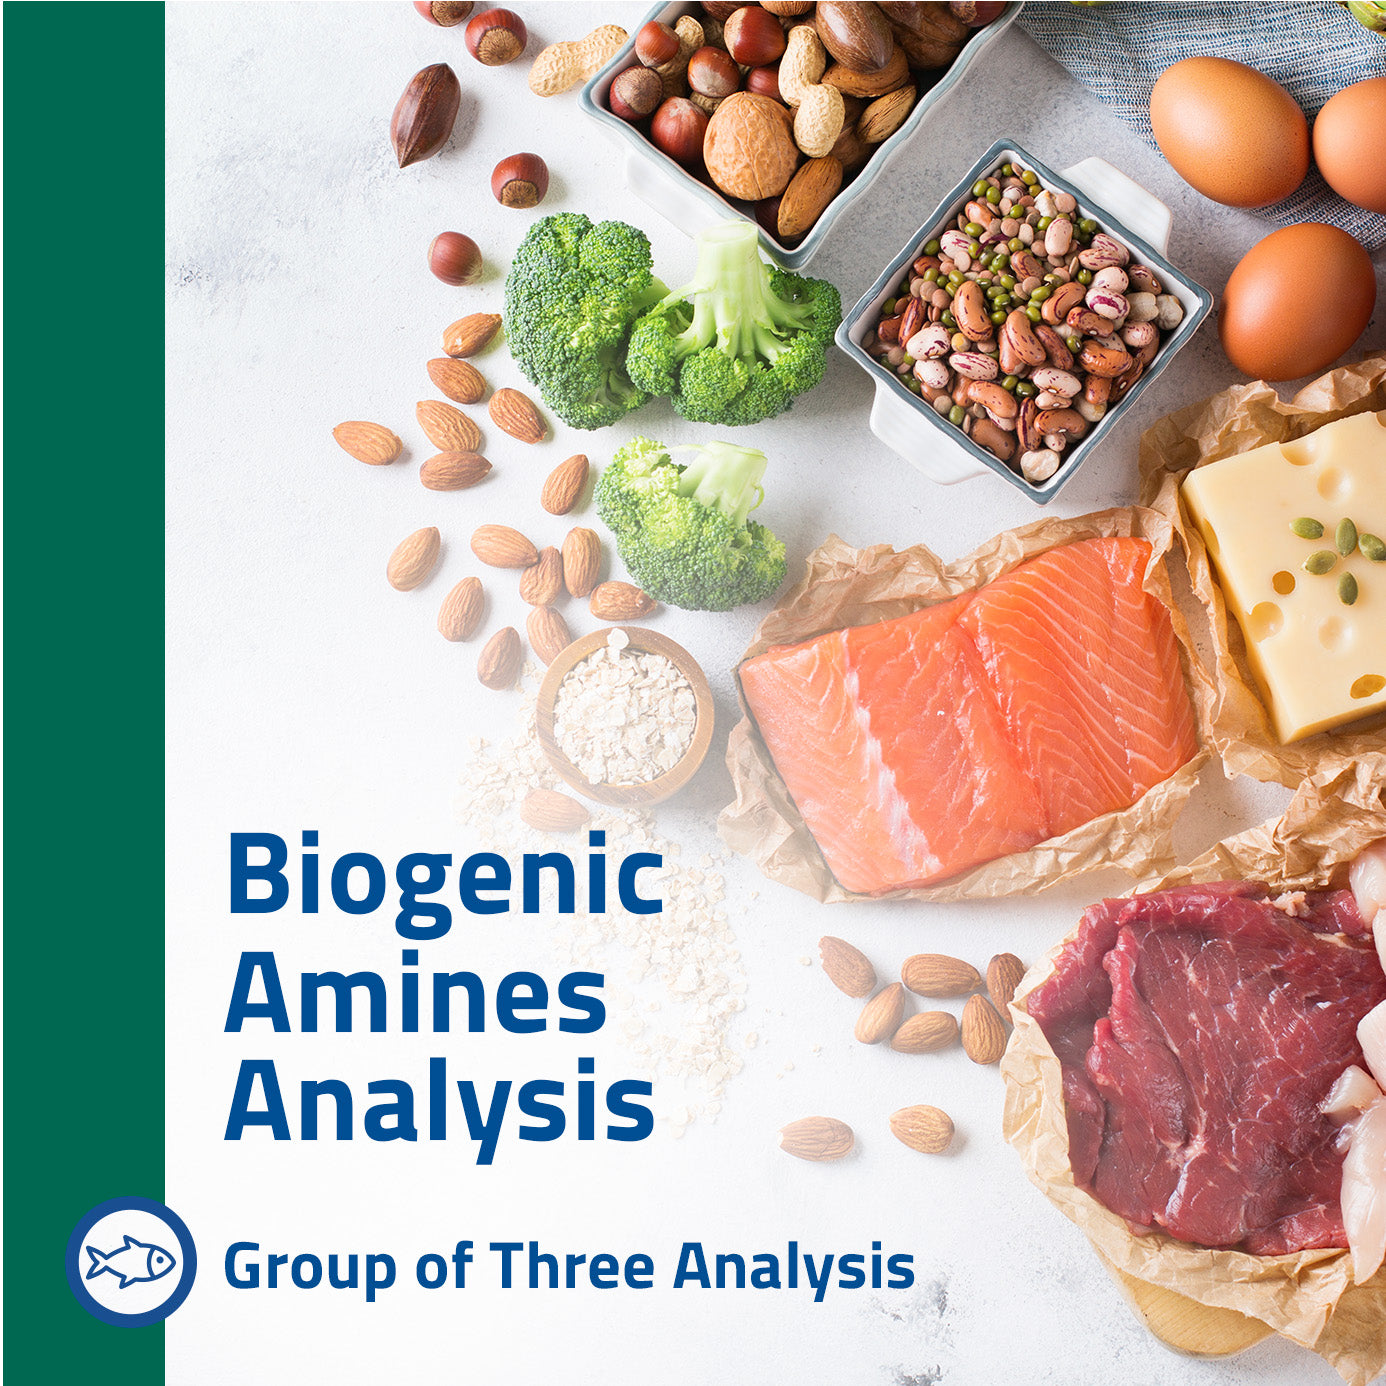 Three Biogenic Amines Analysis